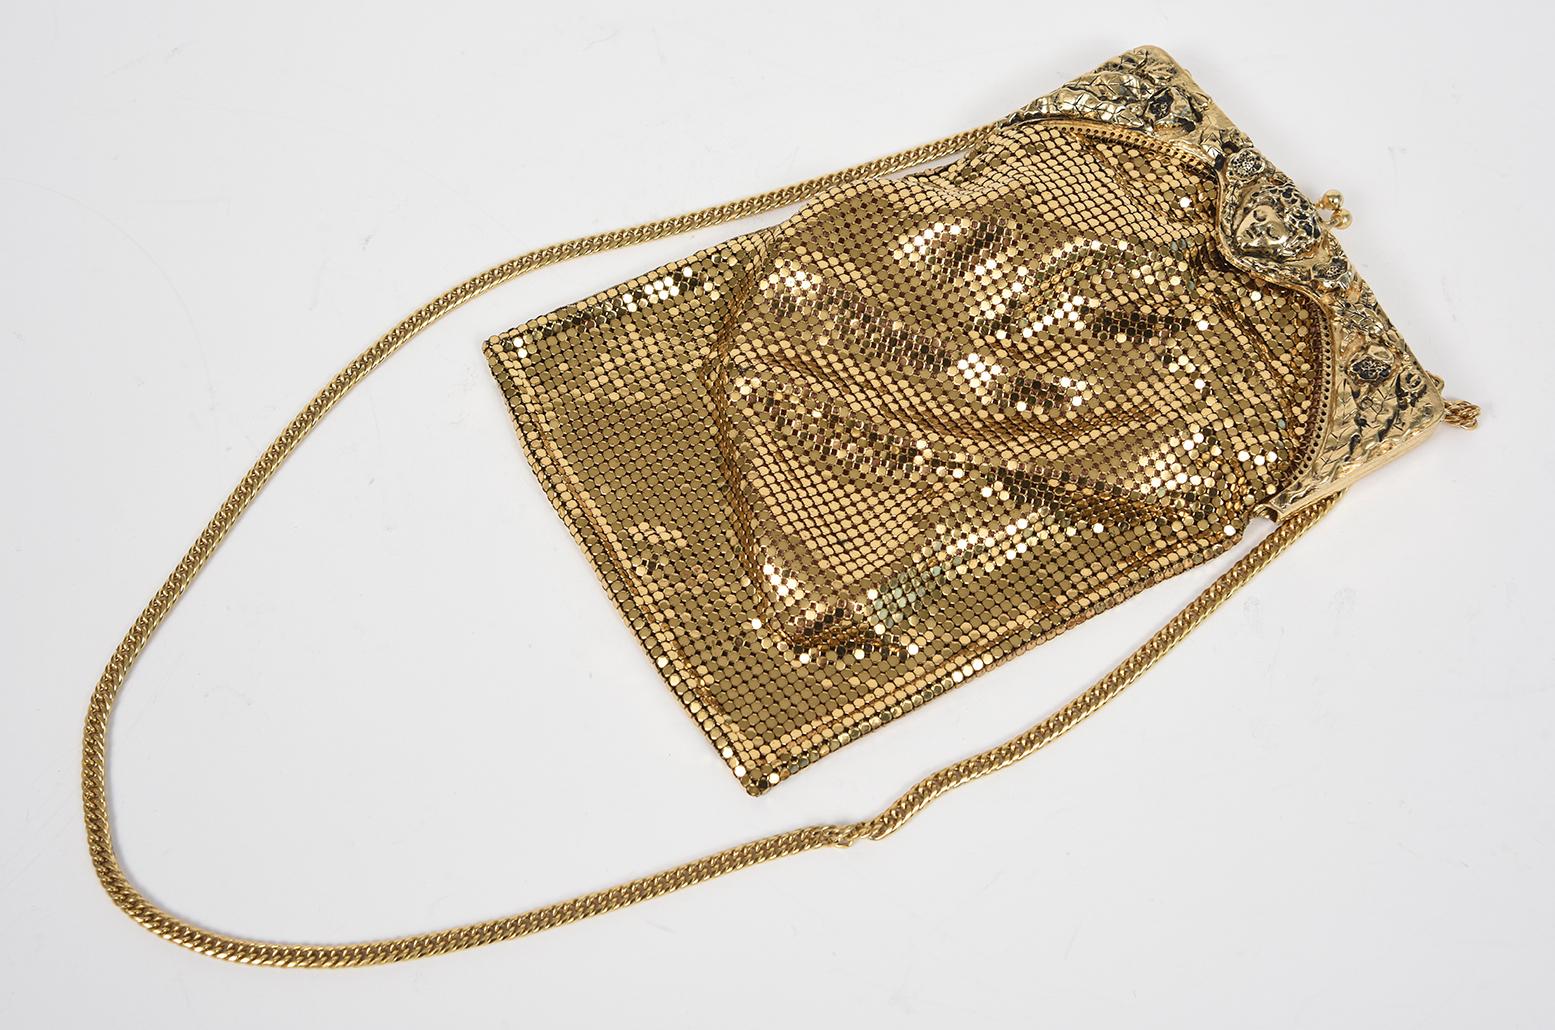 Seltene vintage Whiting & Davis Co. gold mesh chainmail Geldbörse mit Rahmen, die ein zentrales Gesicht zwischen Blättern und Blumen zeigt.  Es hat eine goldene Kette, die etwa 15 